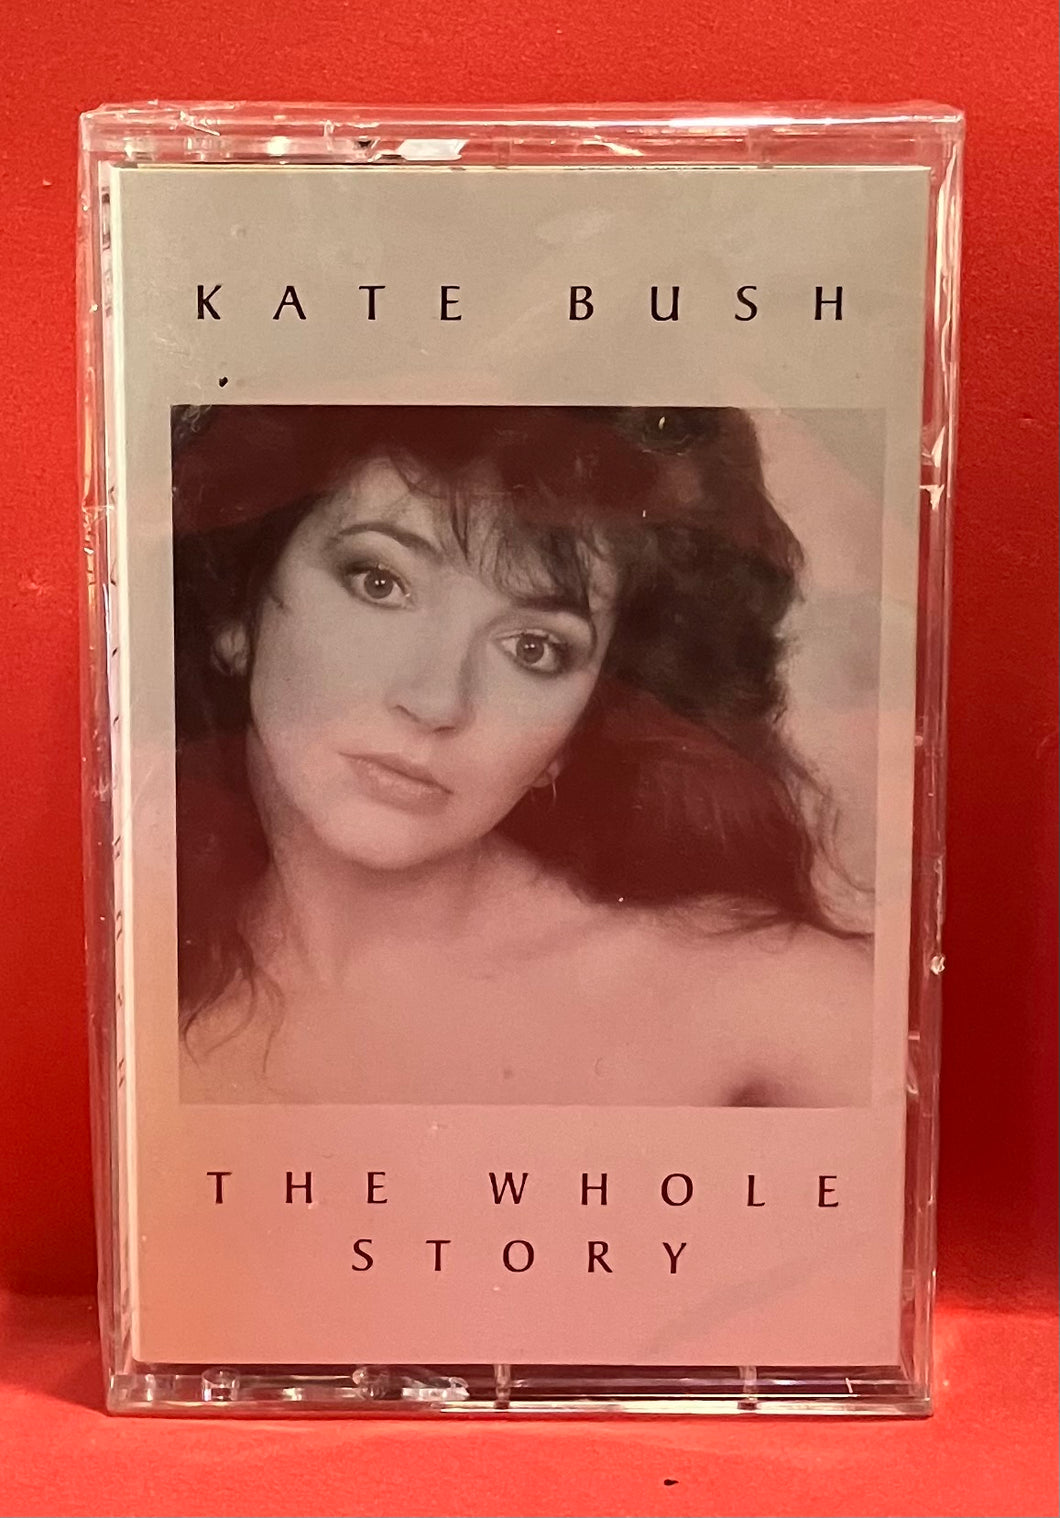 kate bush the whole story cassette